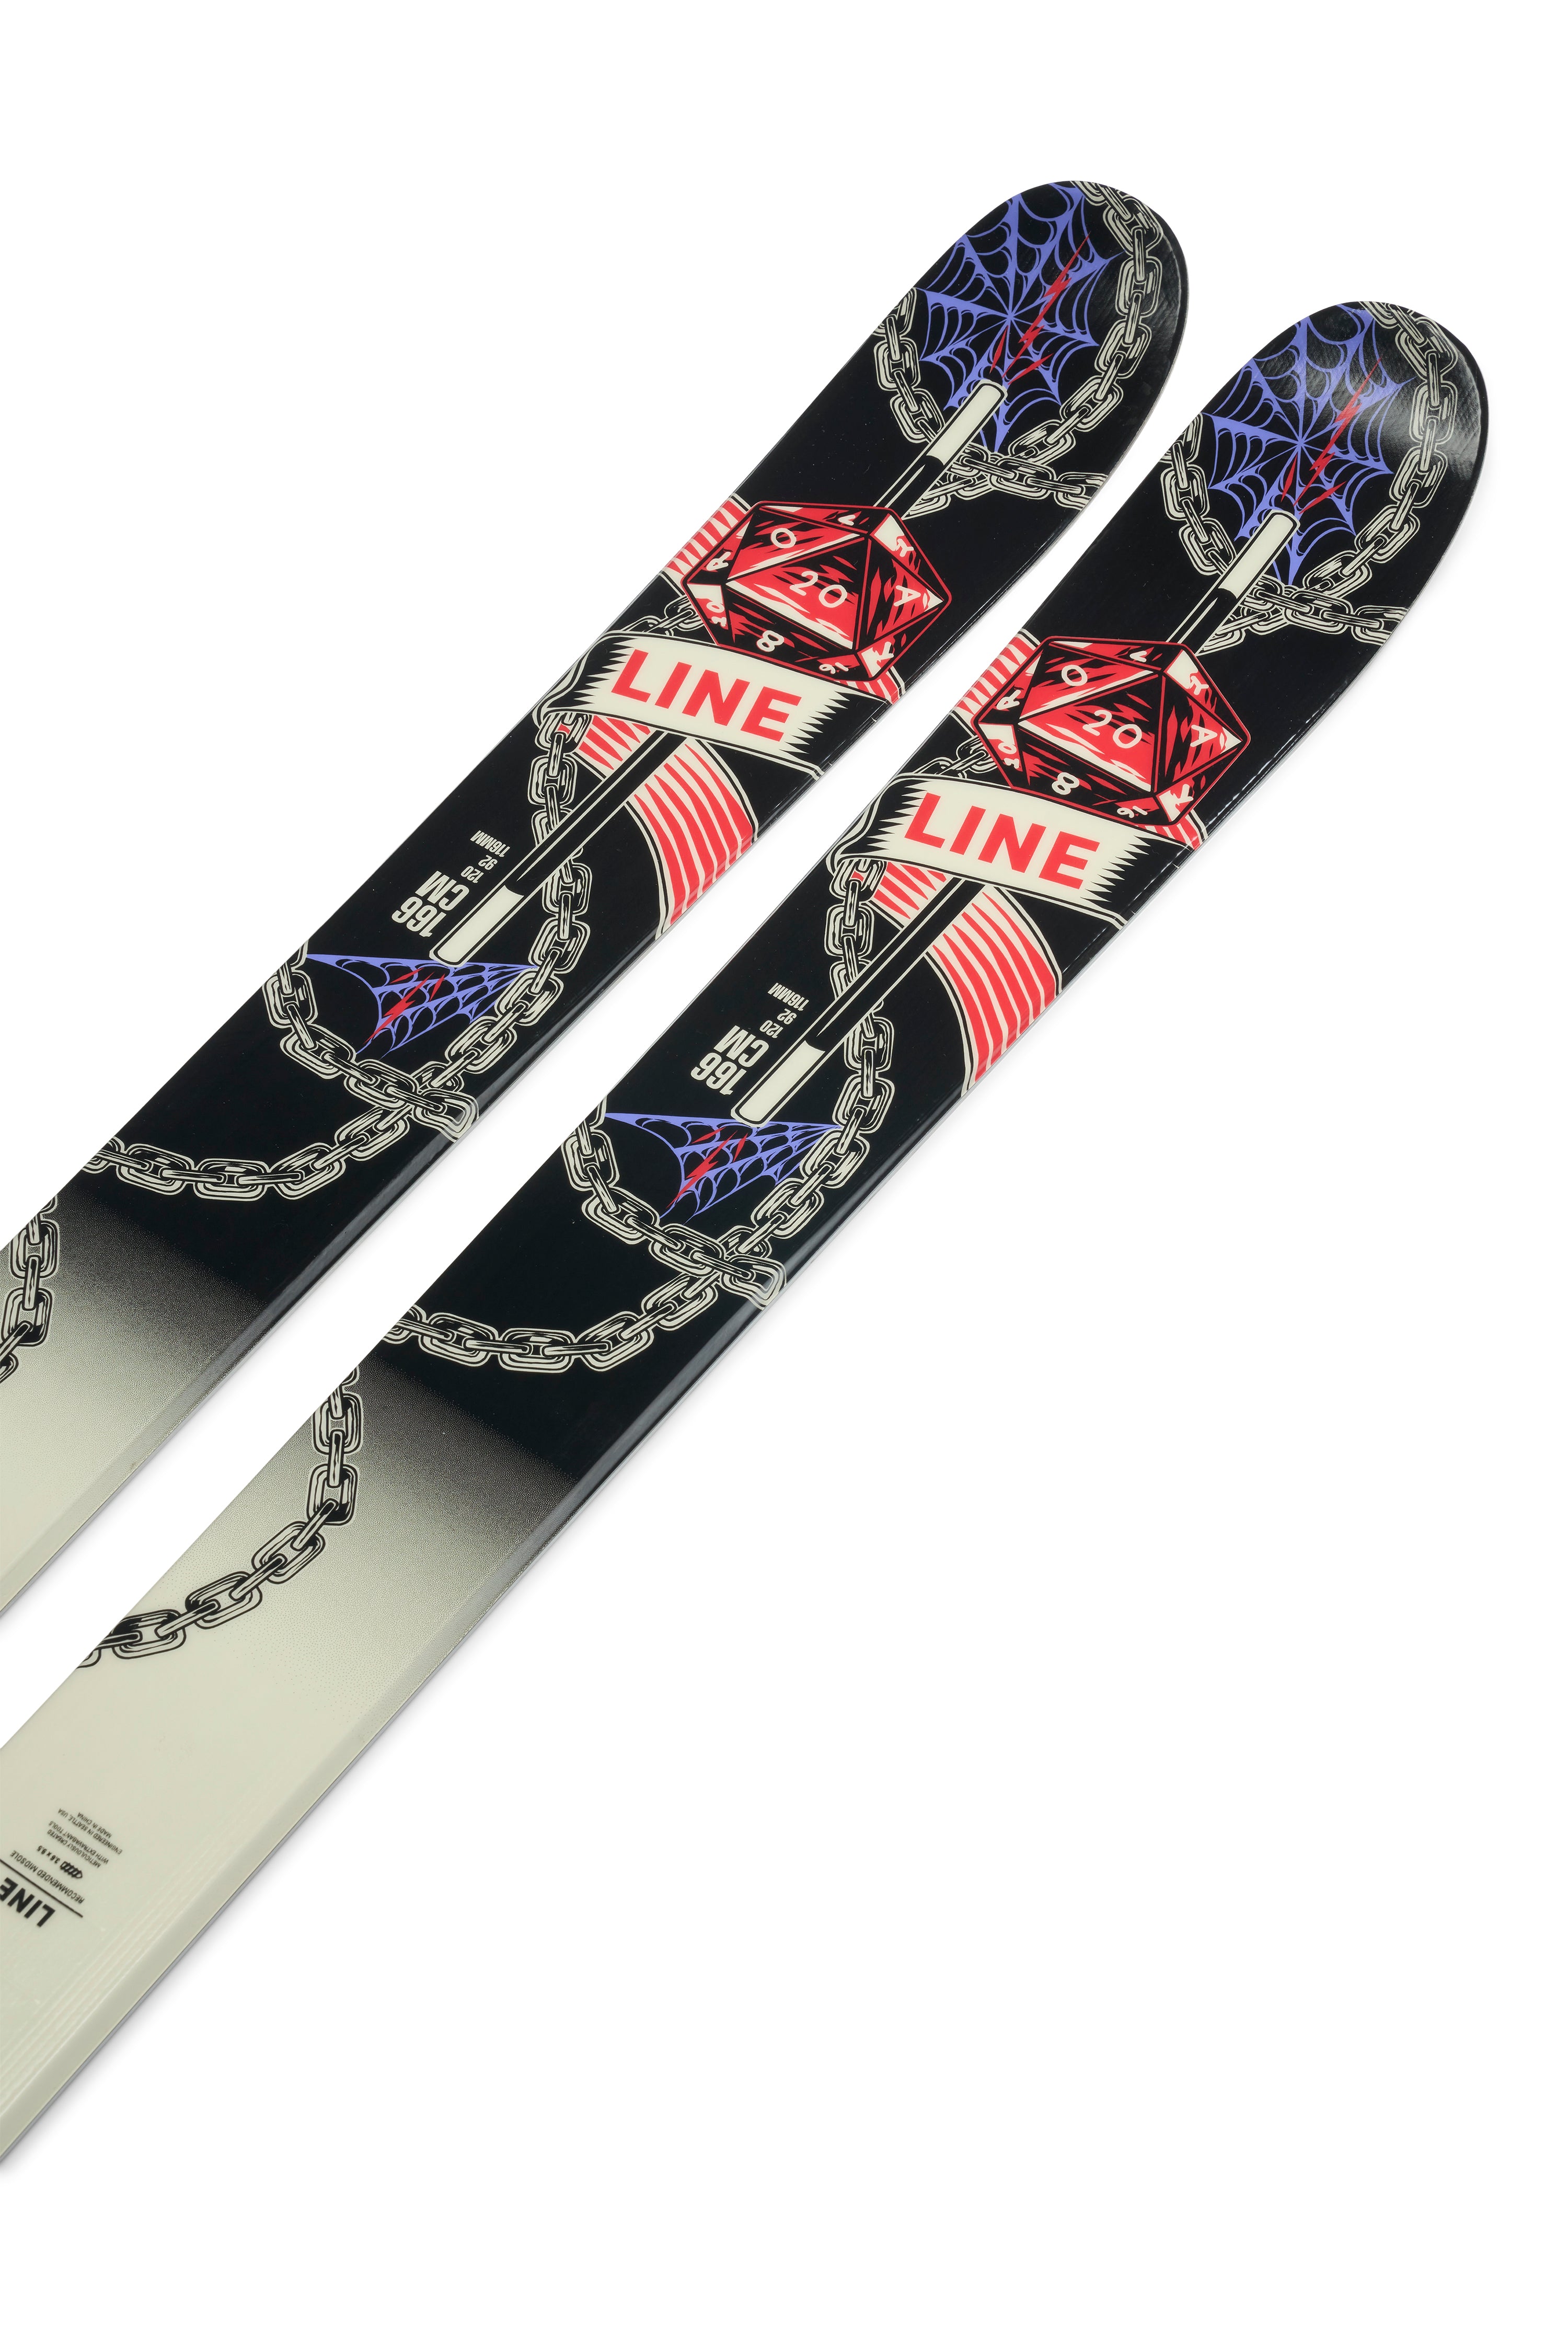 Line Honey Badger TBL Skis 2024 – The Ski Chalet